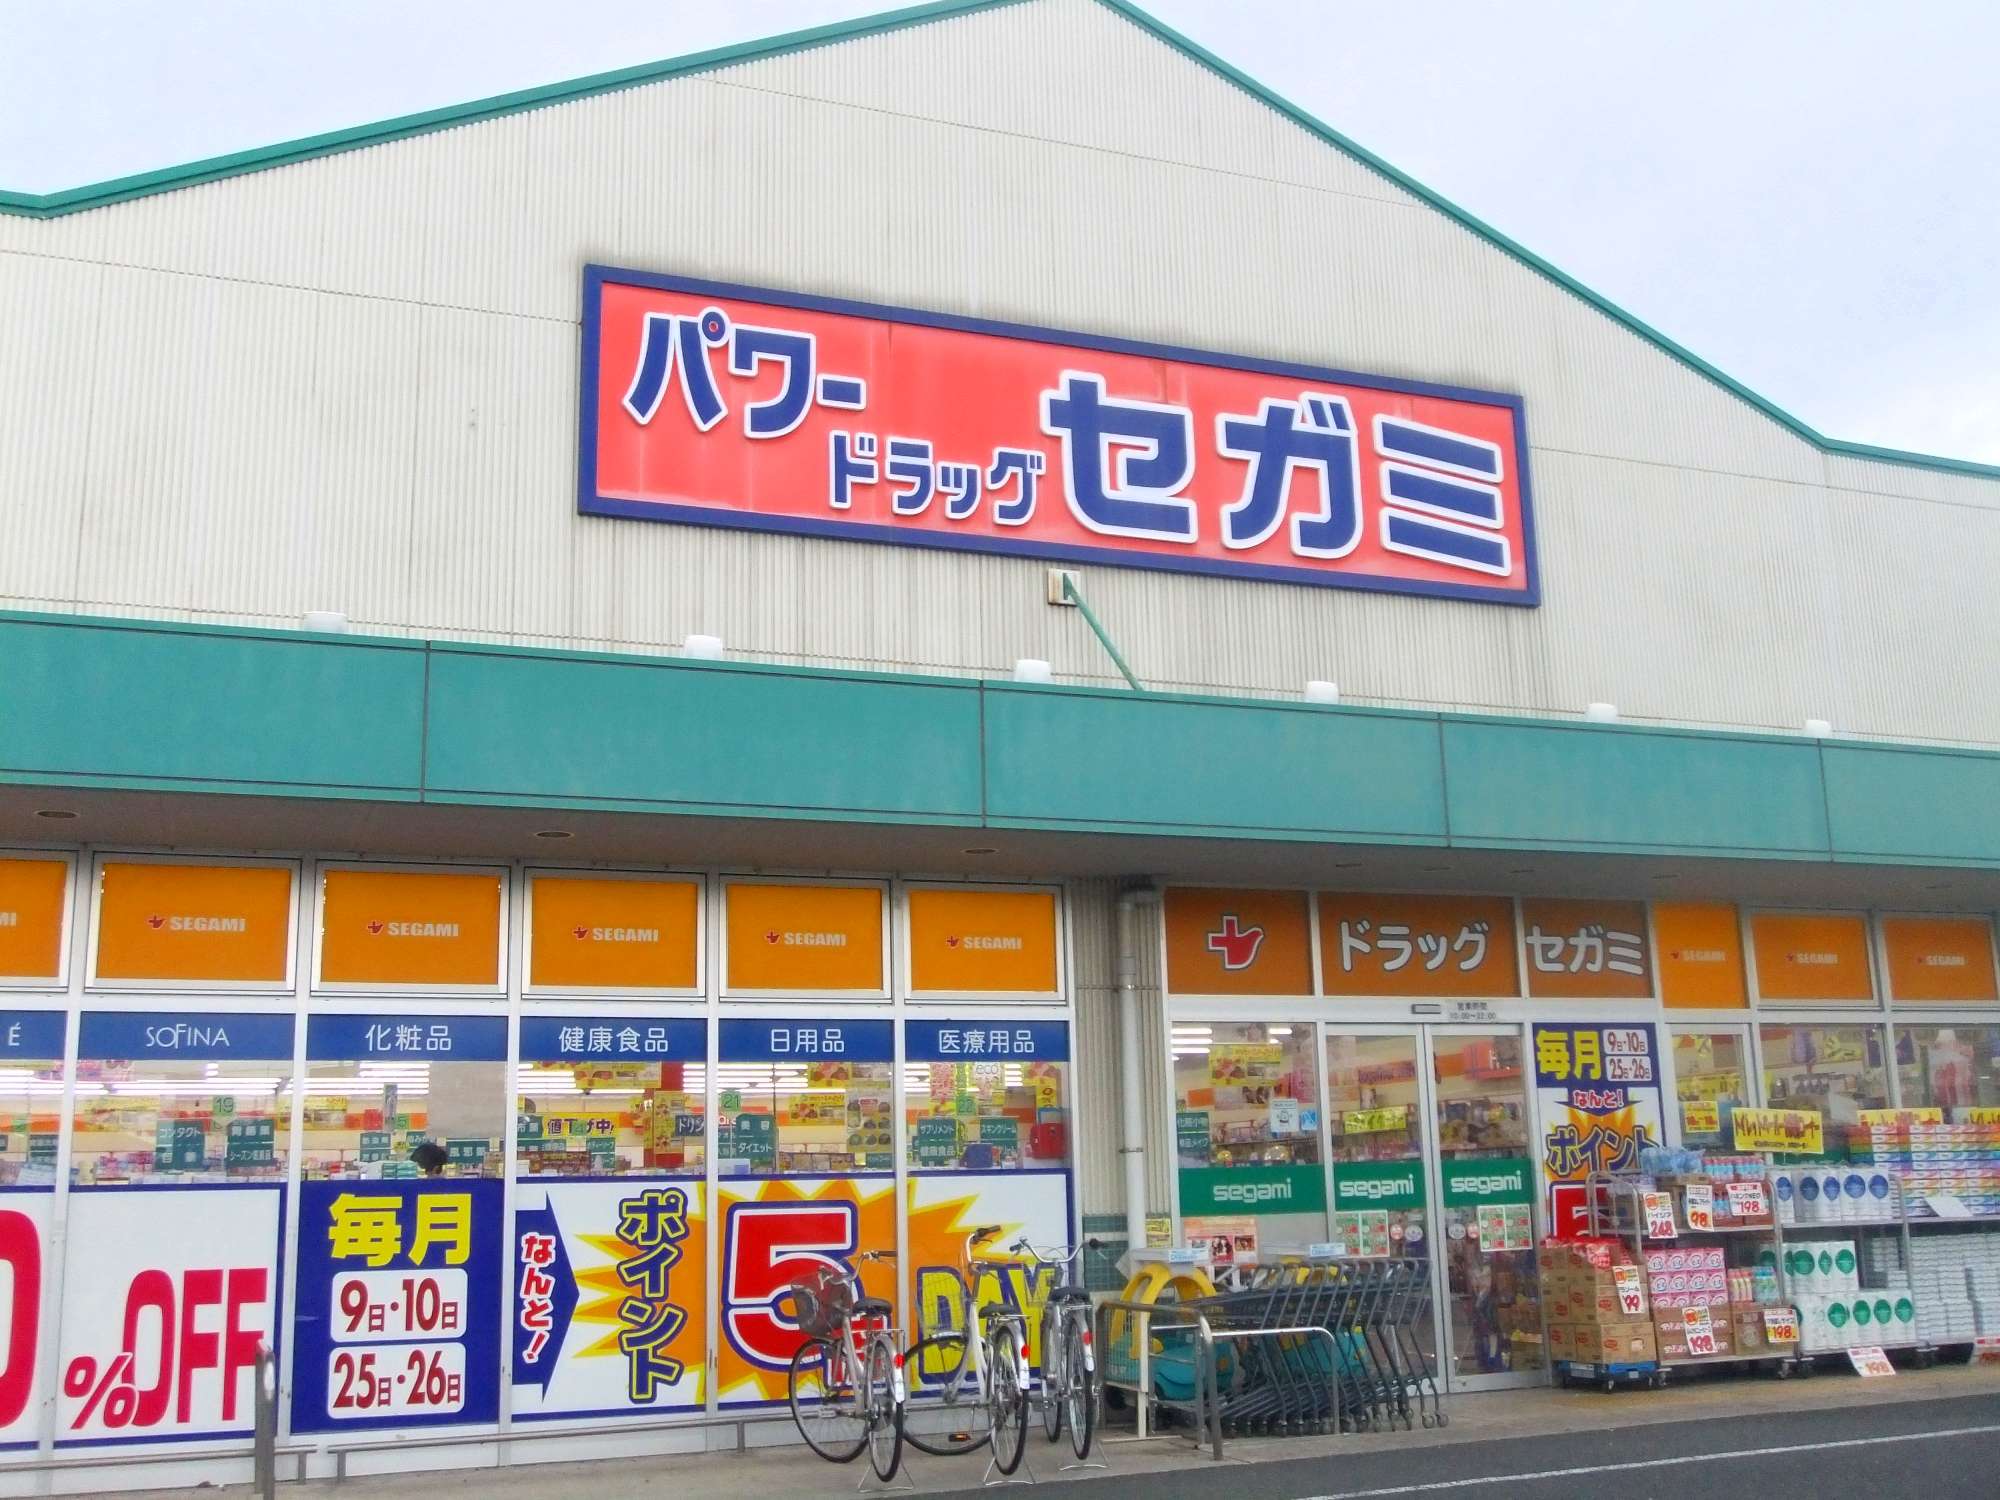 Dorakkusutoa. Drag Segami new Tokorozawa shop 1295m until (drugstore)